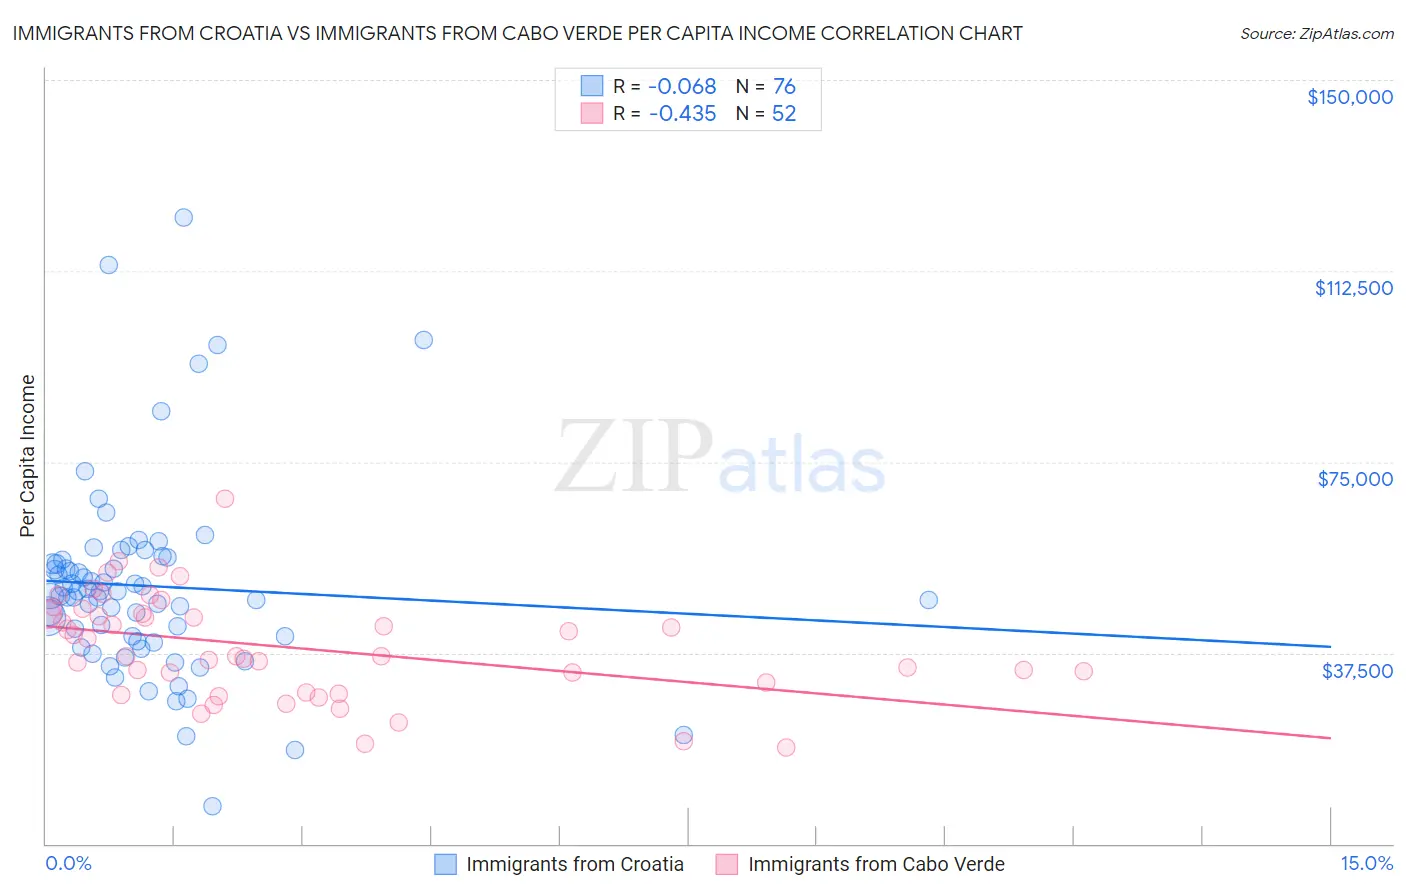 Immigrants from Croatia vs Immigrants from Cabo Verde Per Capita Income